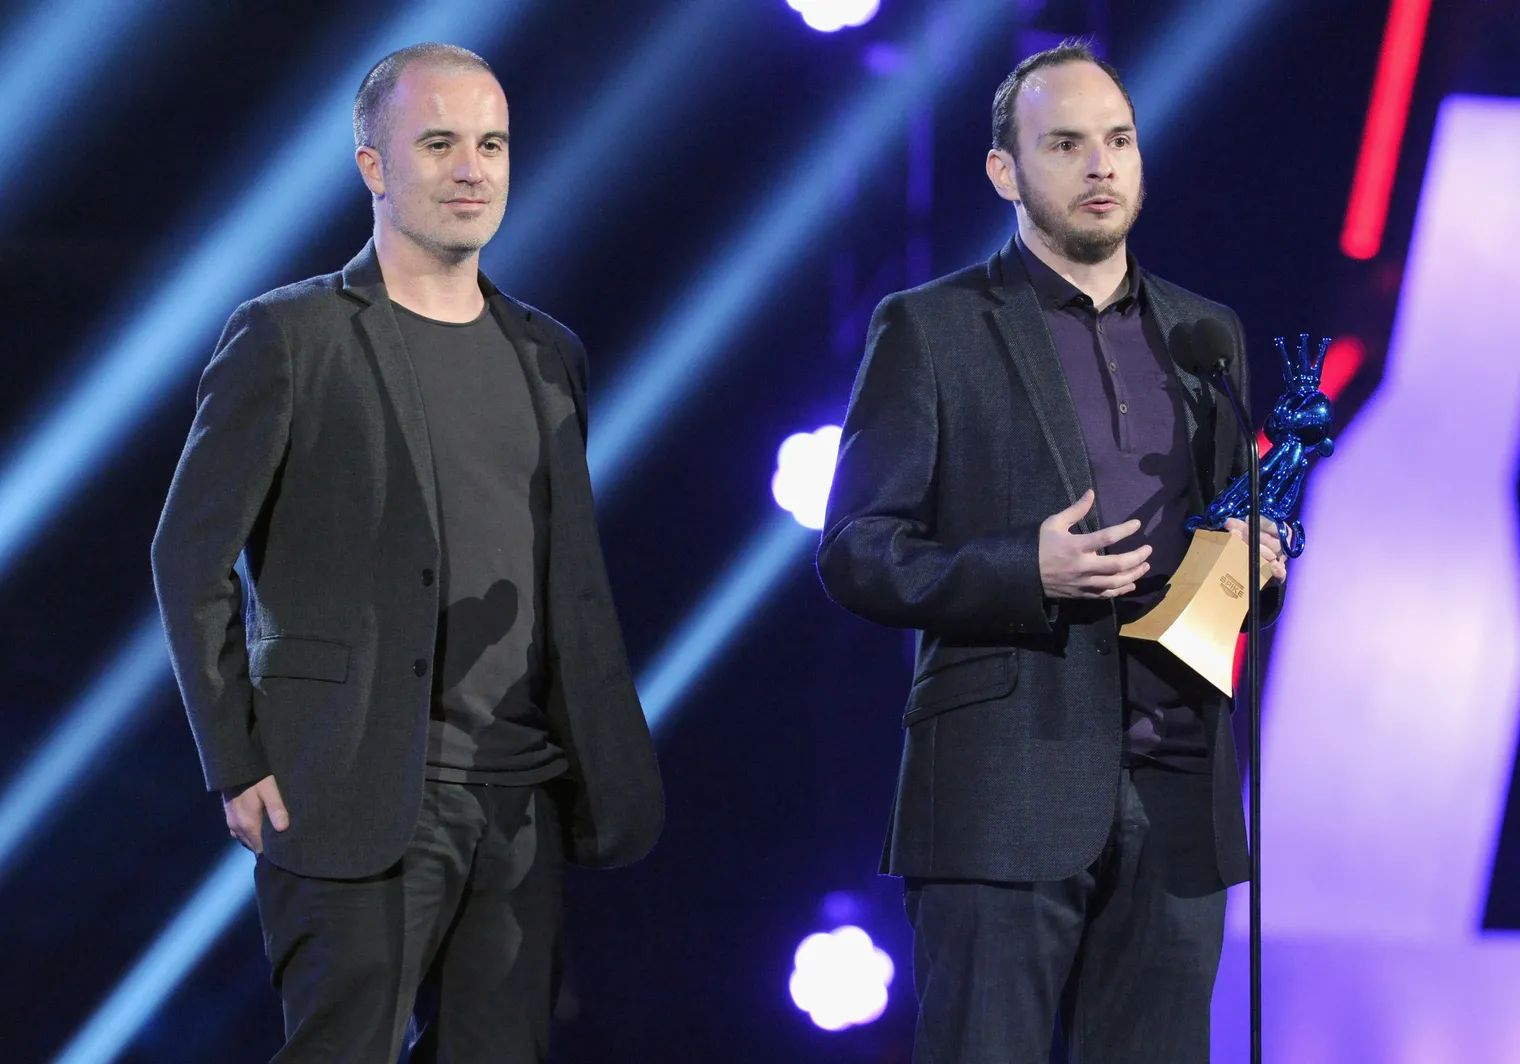  Сефтон Хилл и Джейми Уокер на Spike TV 2011 Video Game Awards. Источник изображения: Polygon 